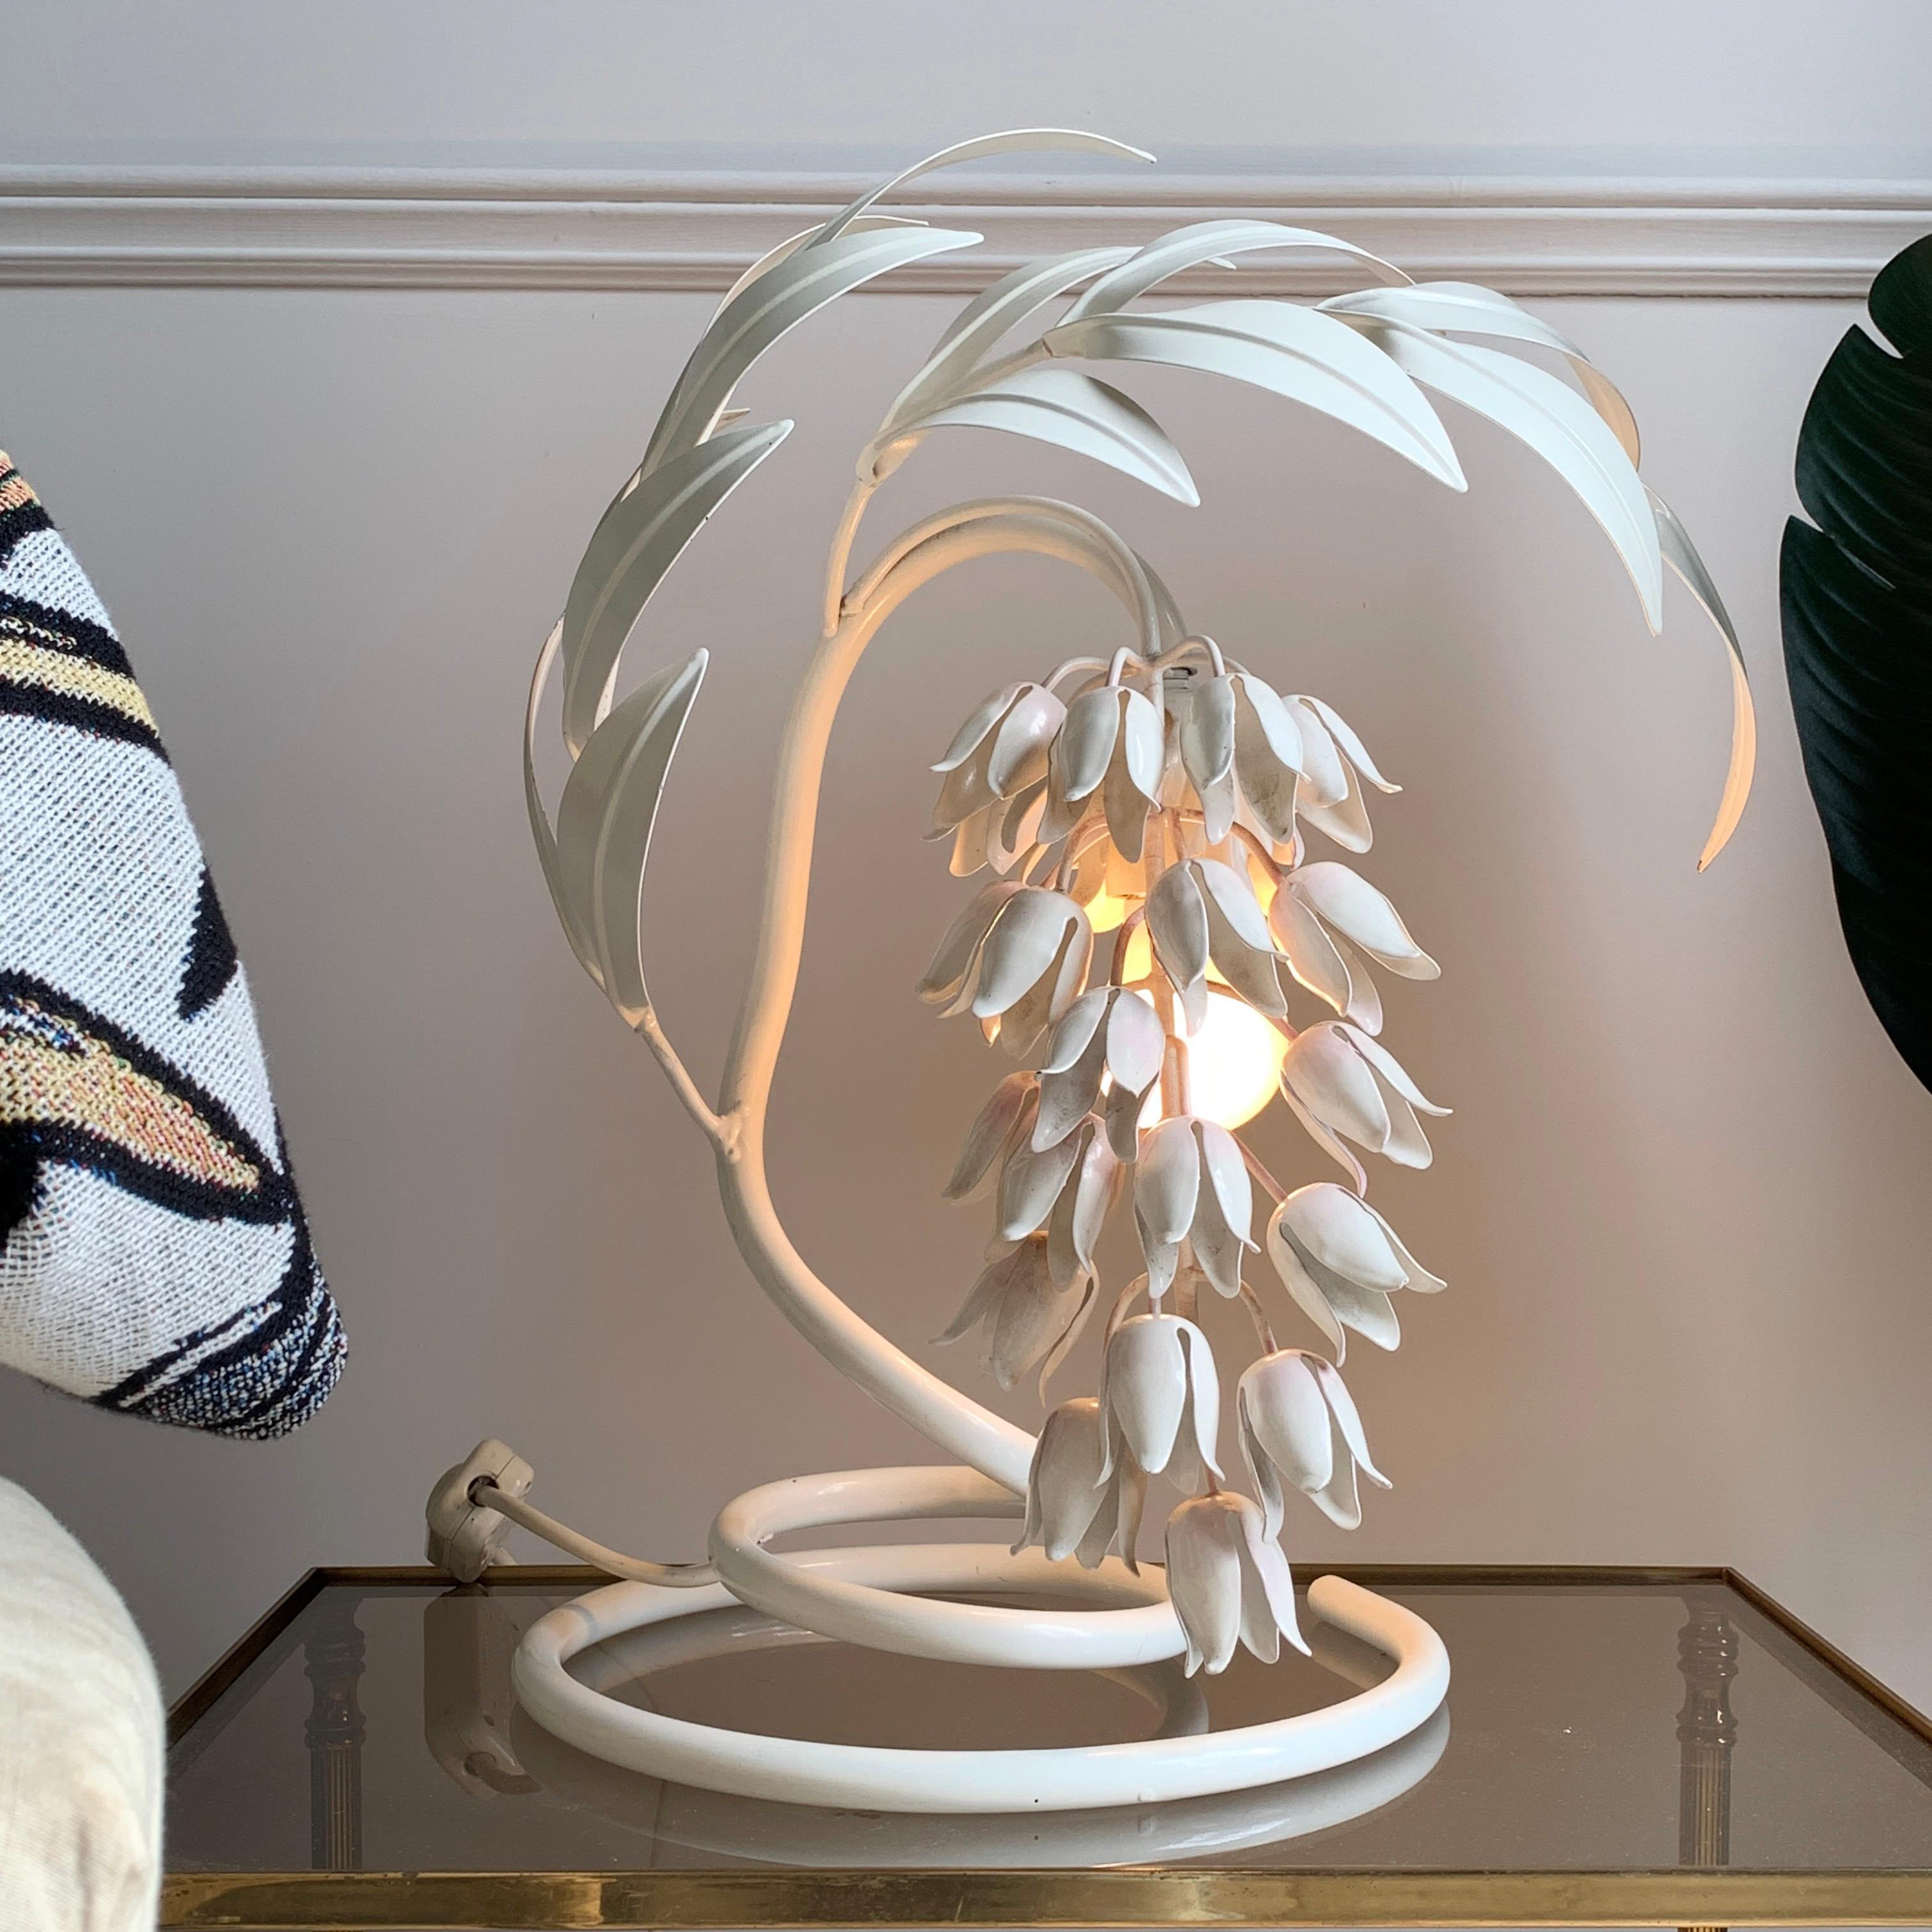 En superbe état d'origine, cette lampe de table de Hans Kogl est un merveilleux exemple de sa capacité à s'inspirer du monde naturel et à l'incorporer dans des pièces d'intérieur haut de gamme.

Entièrement blanc, avec un merveilleux accent rose